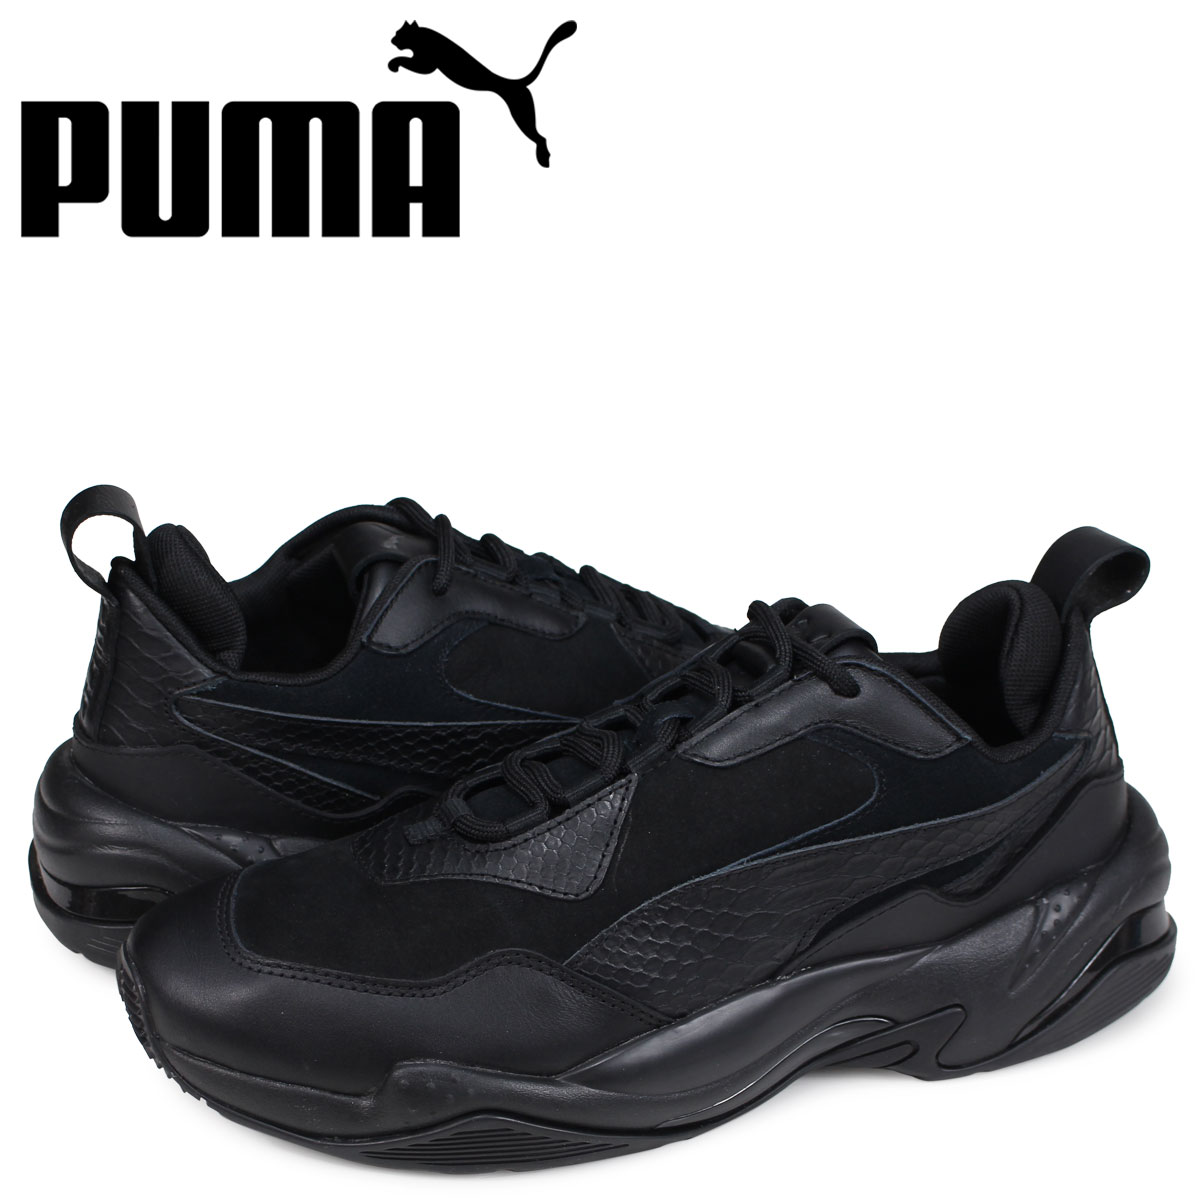 puma men's thunder sneaker